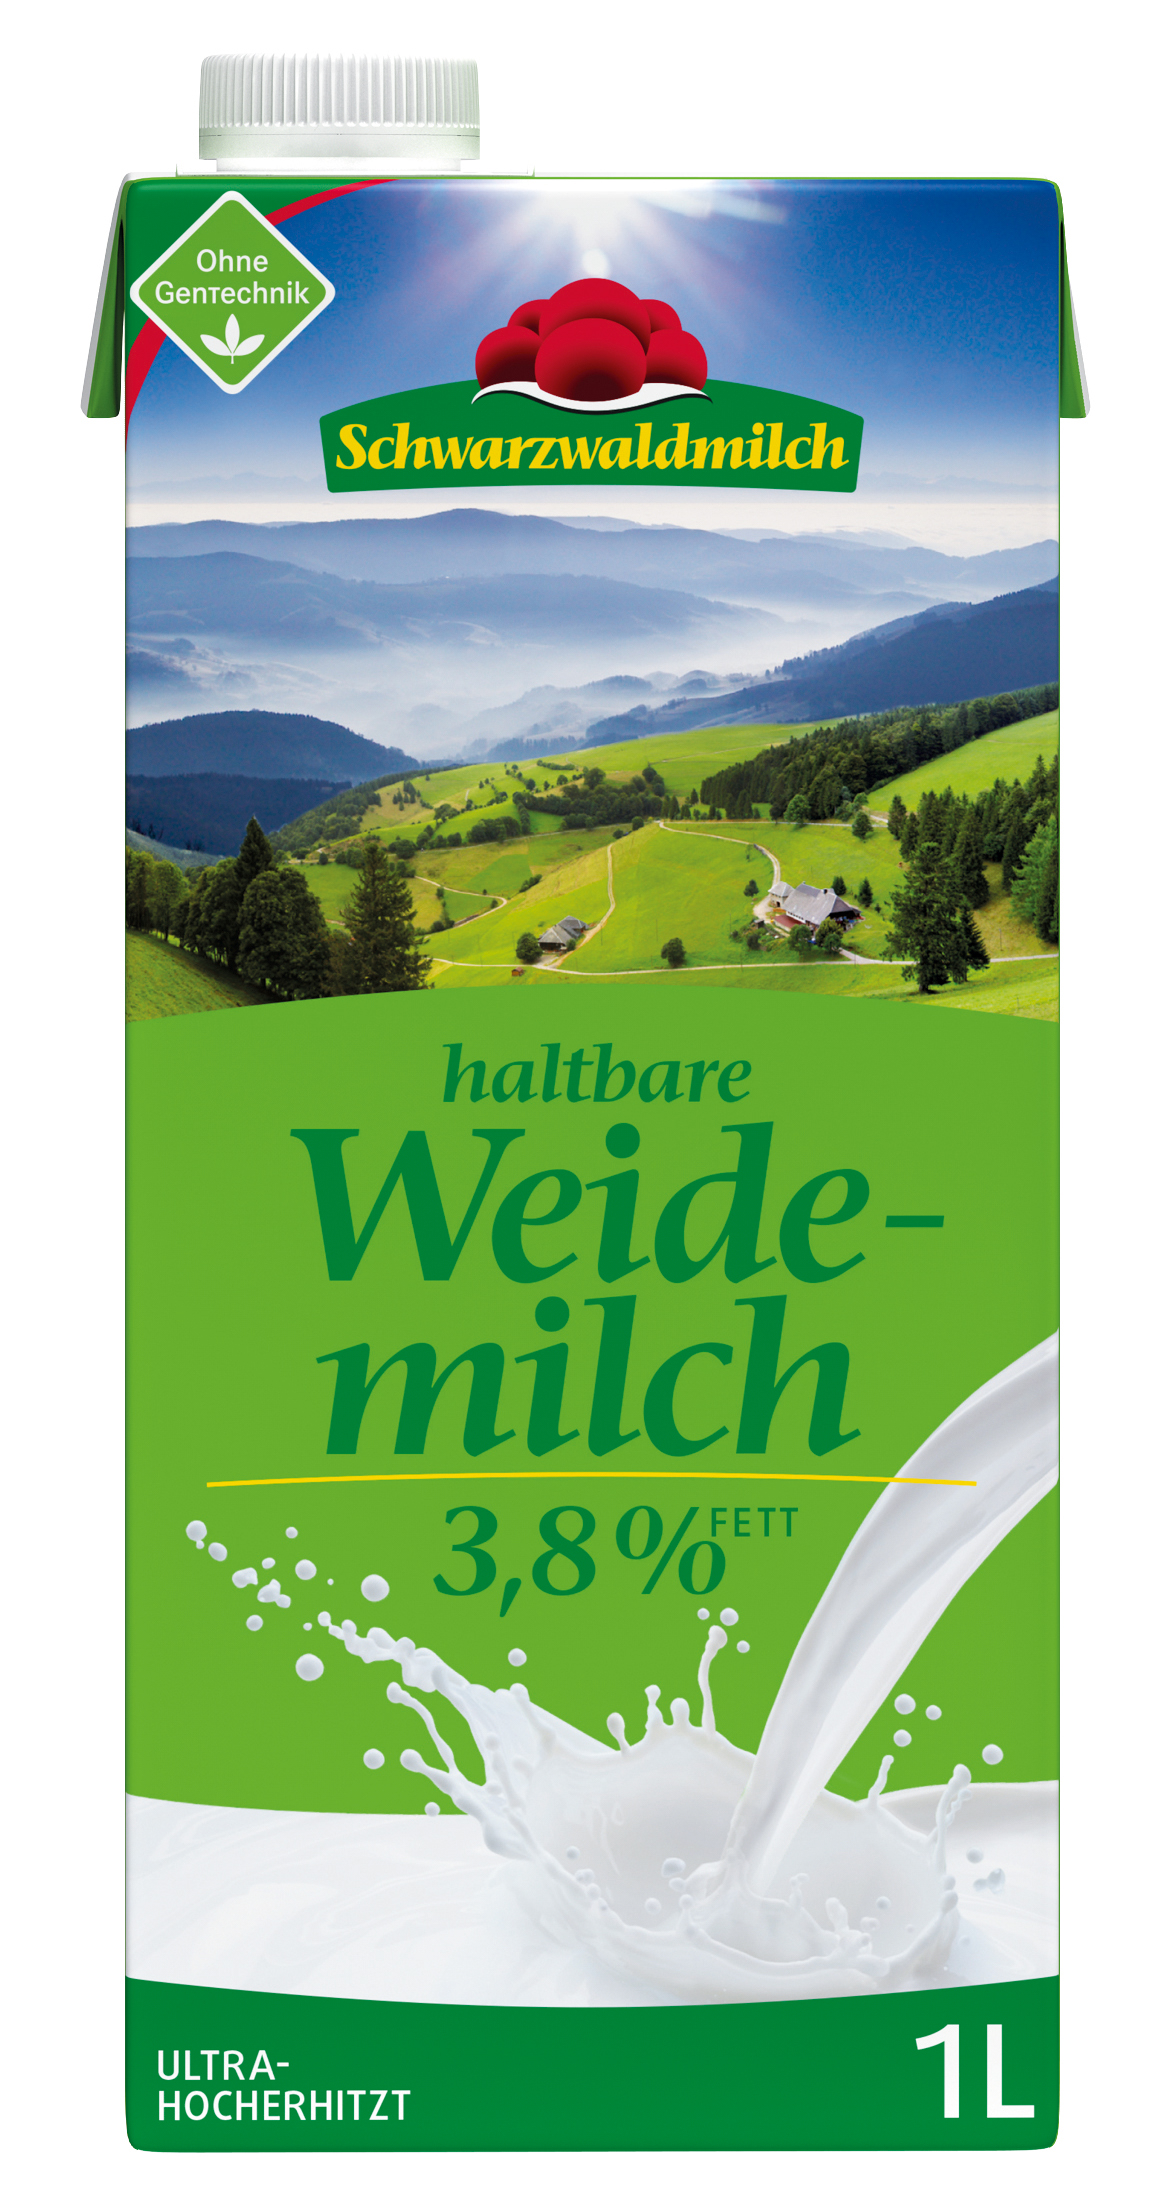 Schwarzwaldmilch 3,8 %